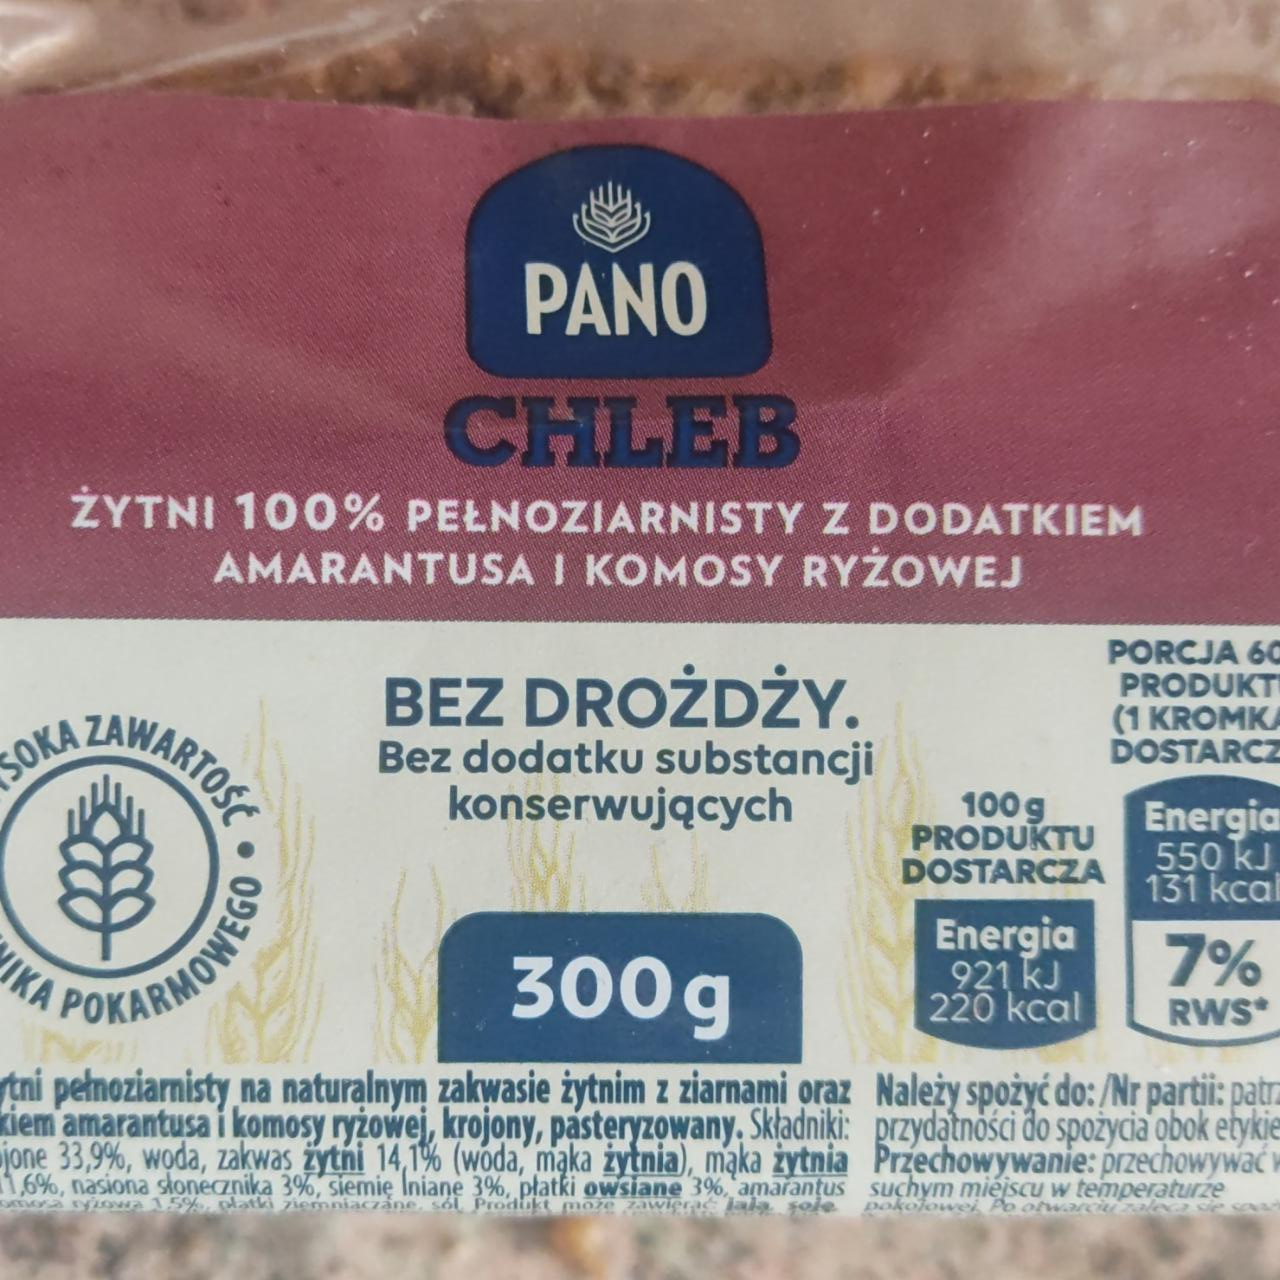 Fotografie - Chleb žytni 100% pelnozarnisty z dodatkiem amarantusa i komosy ryžowej Pano